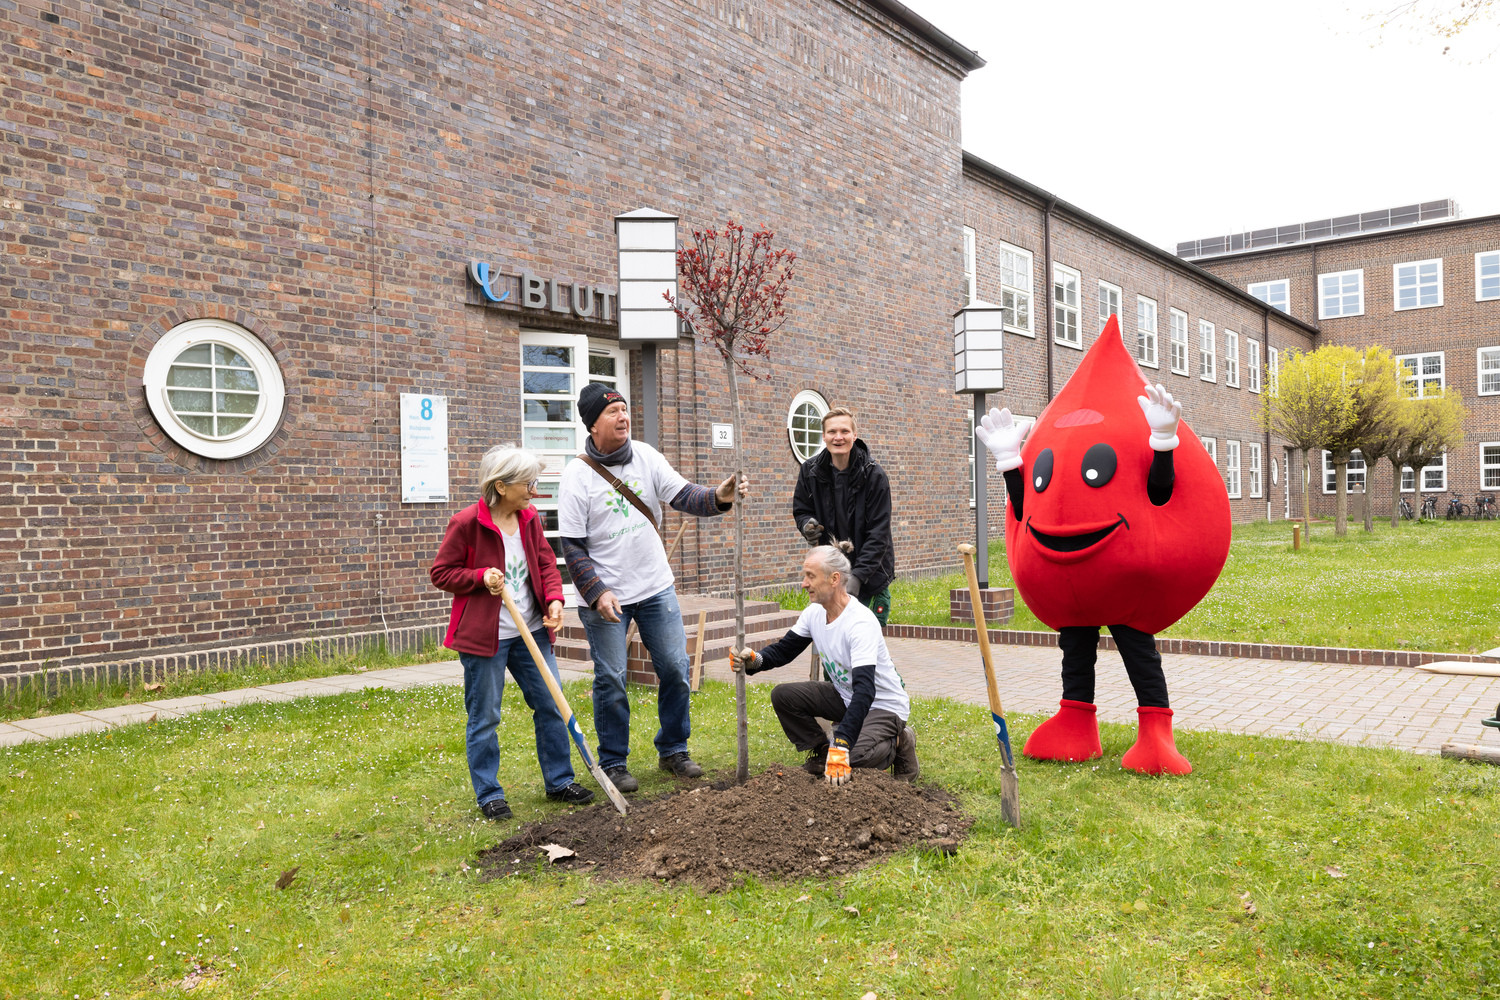 Drei Vertreter:innen des Baumpflanzprojektes LEIPZIG pflanzt sowie Mitarbeiter der UKL-Gärtnerei pflanzten anlässlich des internationalen Tag des Baumes eine Blutpflaume vor der UKL-Blutbank.